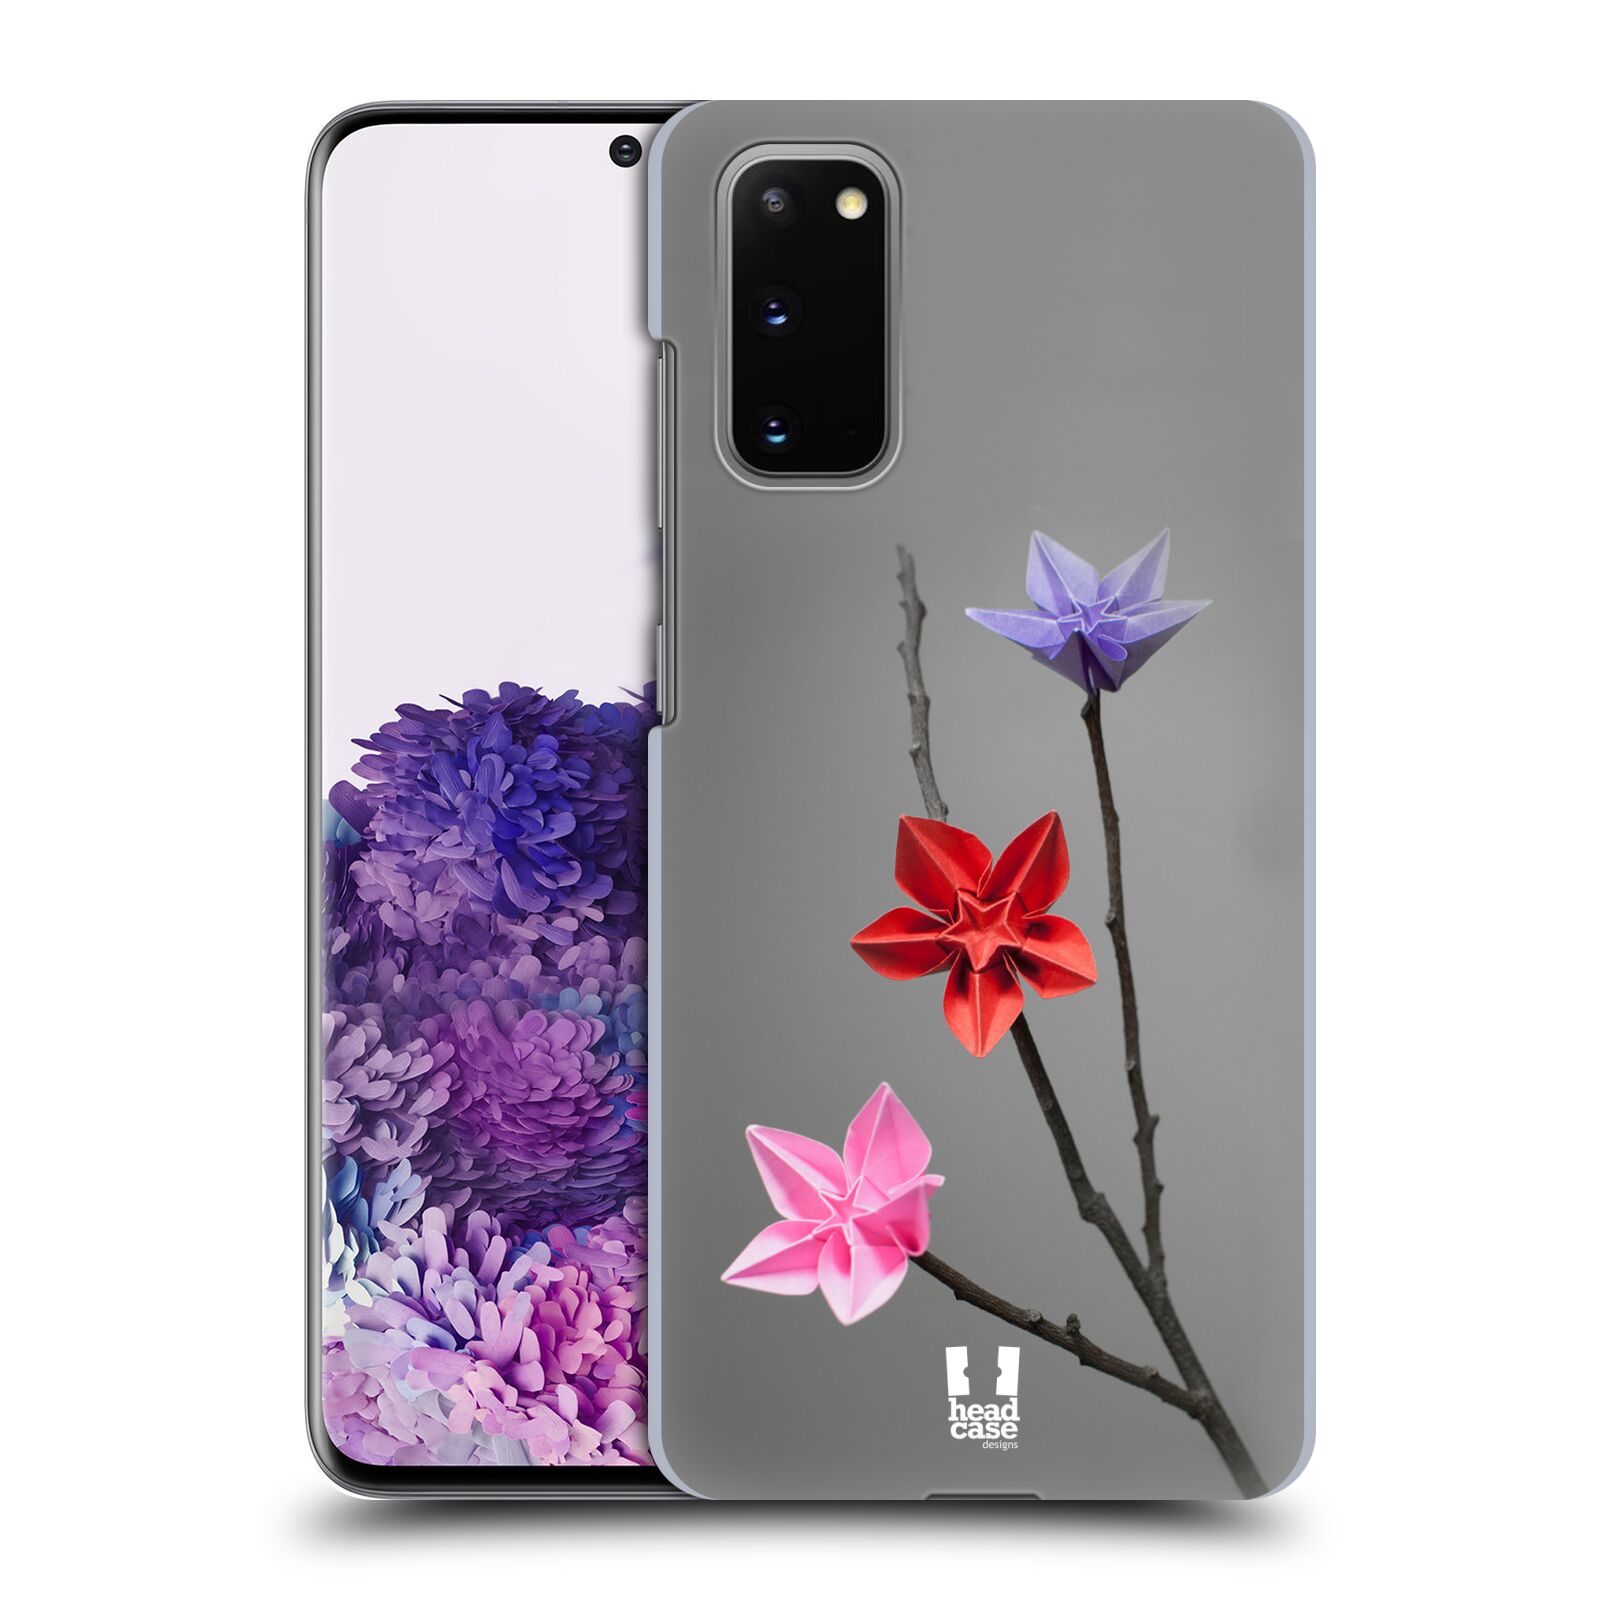 Zadní obal pro mobil Samsung Galaxy S20 / S20 5G - HEAD CASE - Origami květy foto